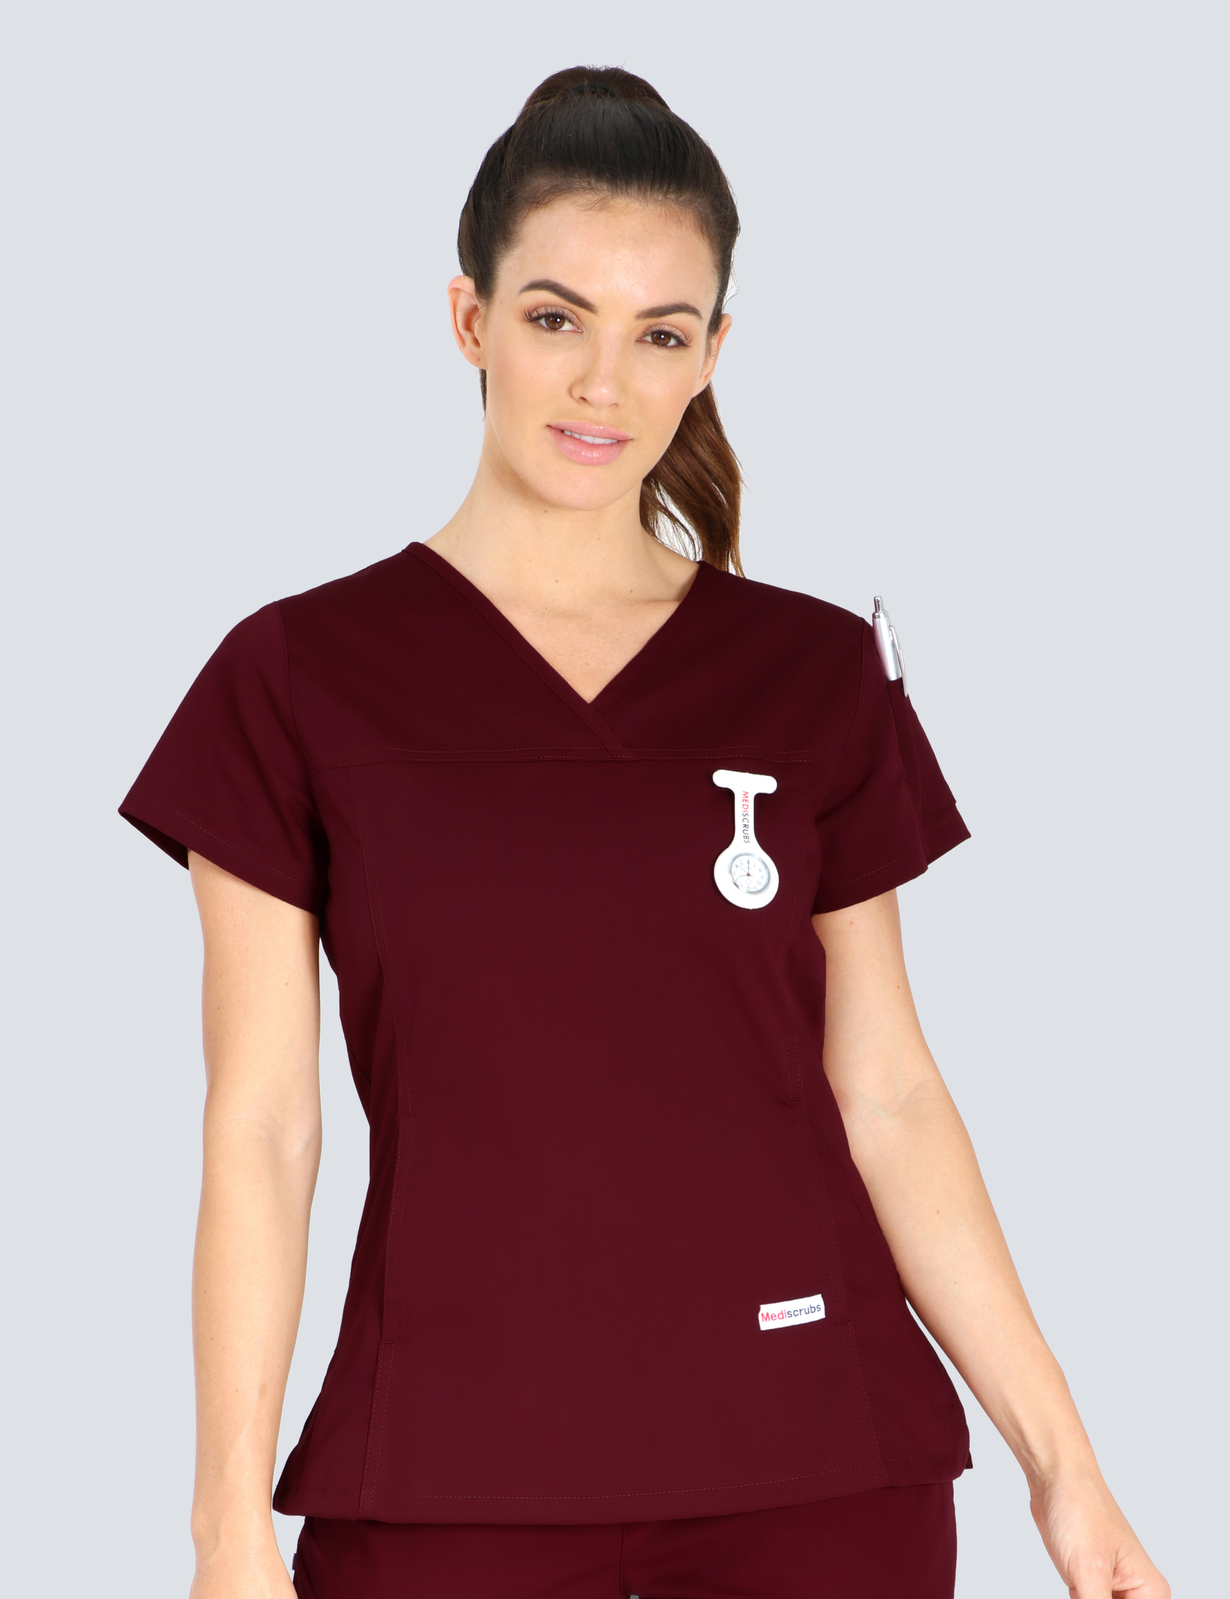 Queensland Children's Hospital Emergency Department Nurse Practitioner Uniform Top Bundle  (Women's Fit Top in Burgundy incl Logos)